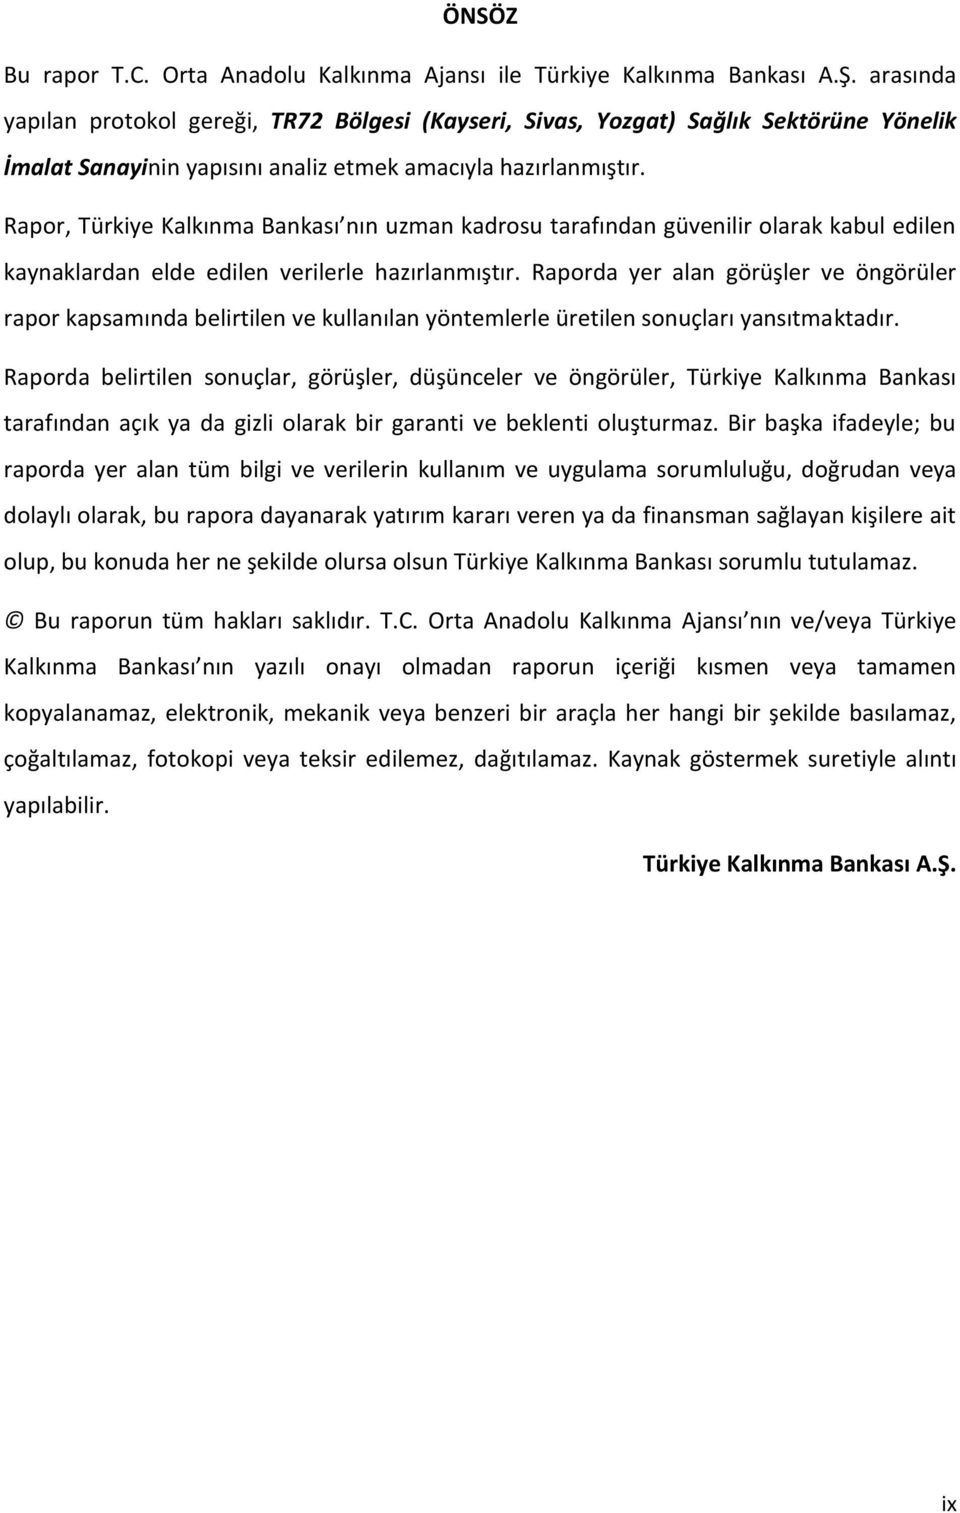 Rapor, Türkiye Kalkınma Bankası nın uzman kadrosu tarafından güvenilir olarak kabul edilen kaynaklardan elde edilen verilerle hazırlanmıştır.